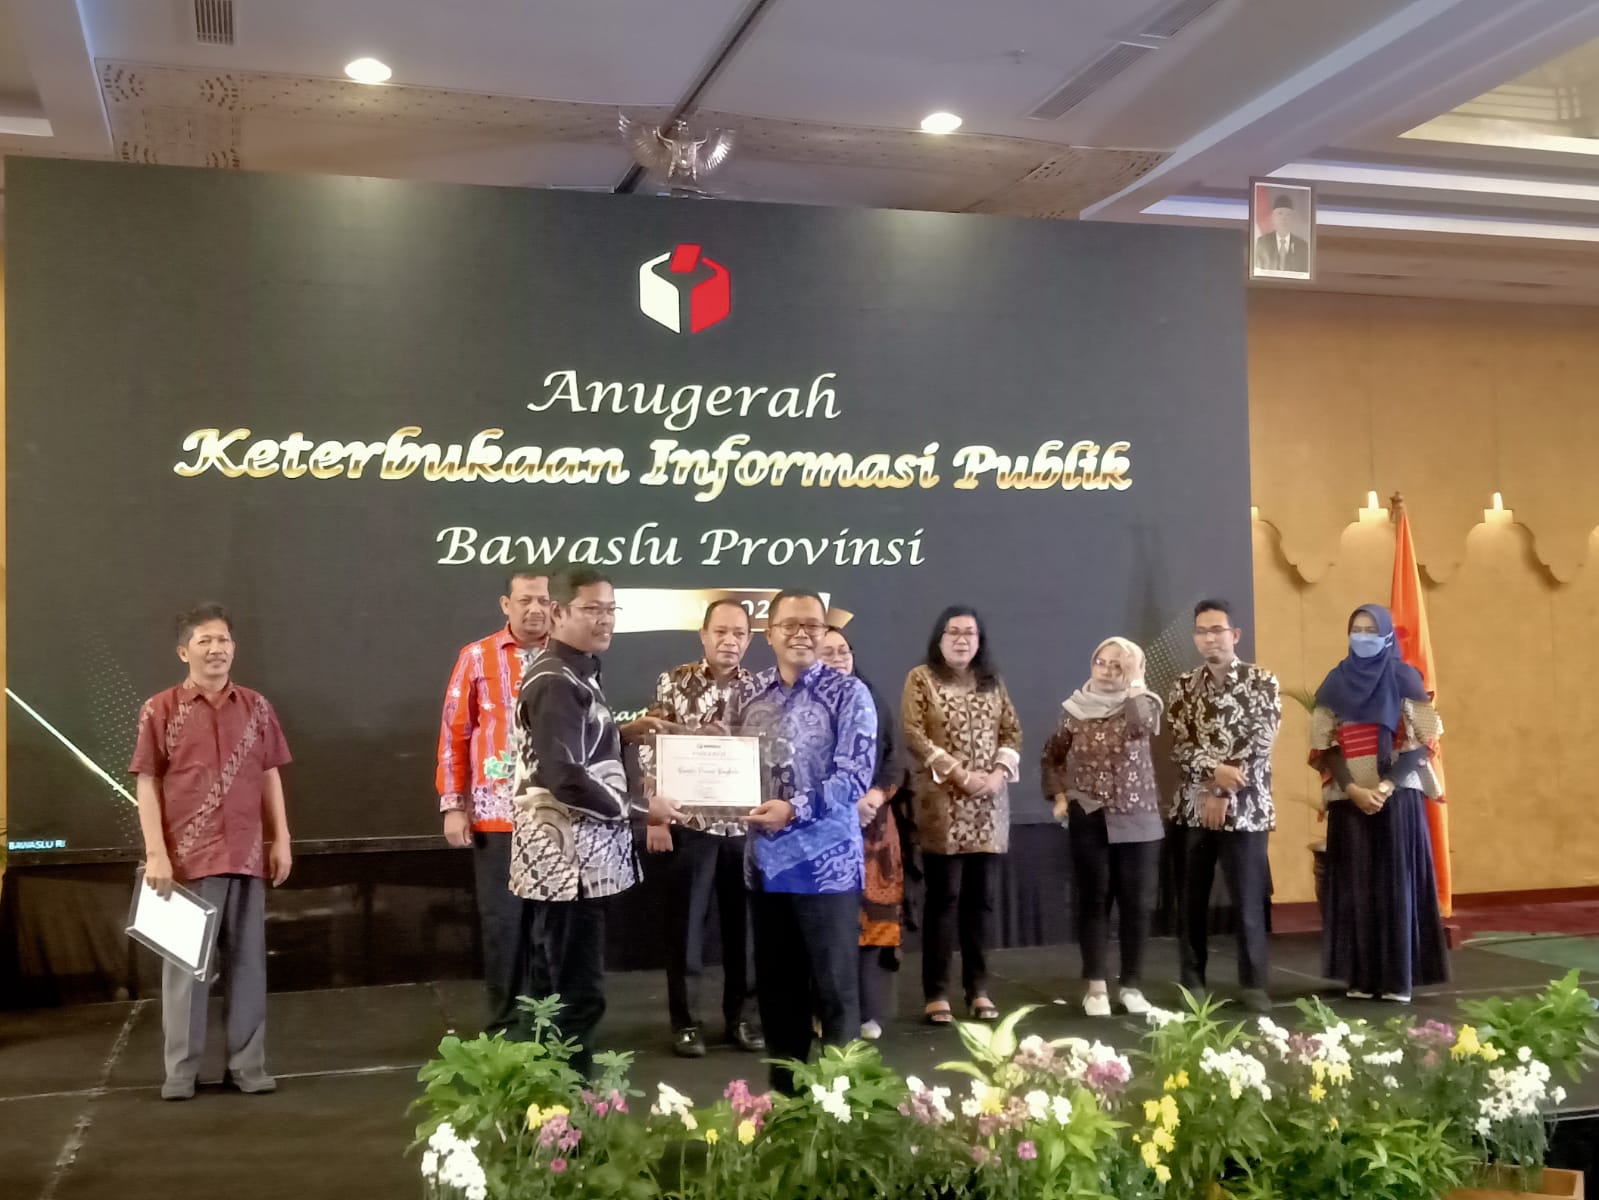 Bawaslu Provinsi Bengkulu Raih Penghargaan Lembaga Informatif